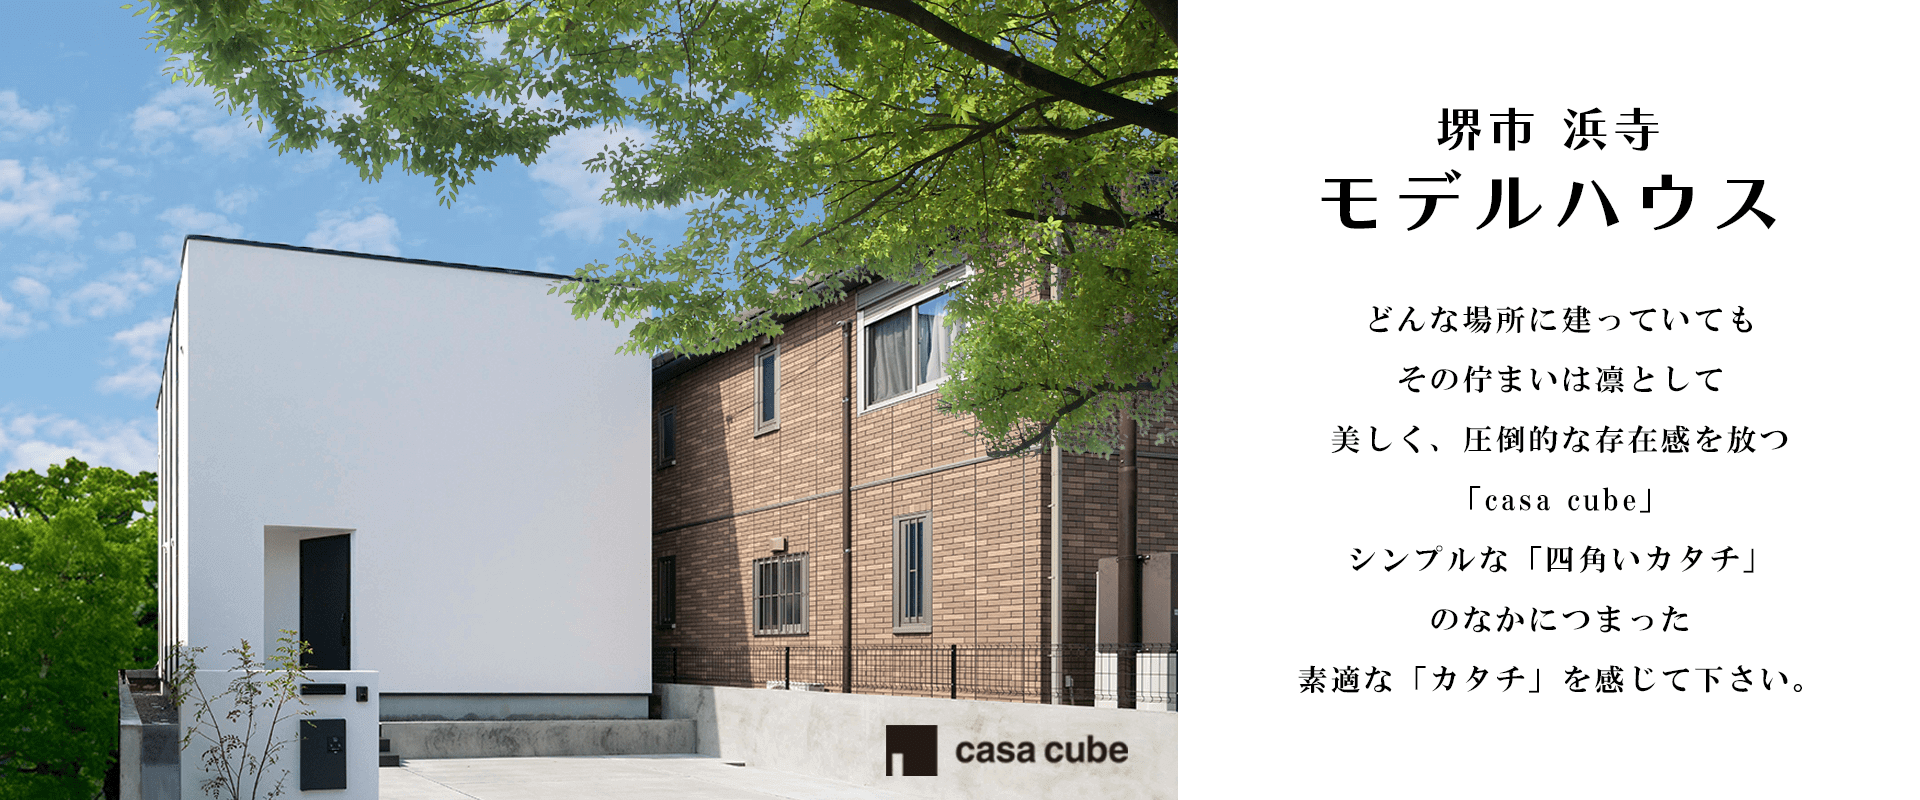 浜寺モデルハウス【casa cube】-大阪・堺の工務店ラックハウジング